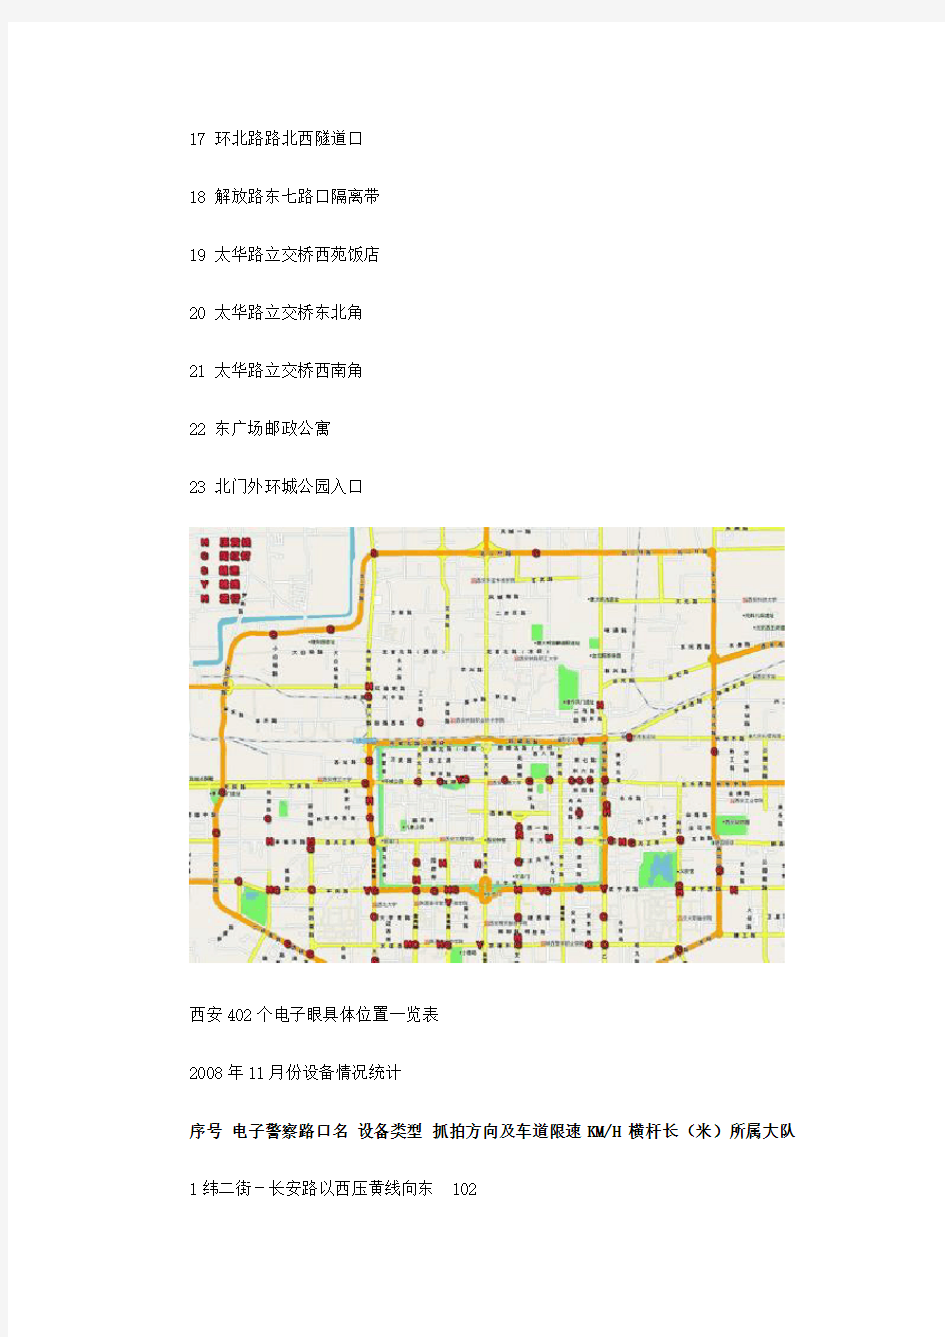 西安市402个电子警察分布地点(含图)